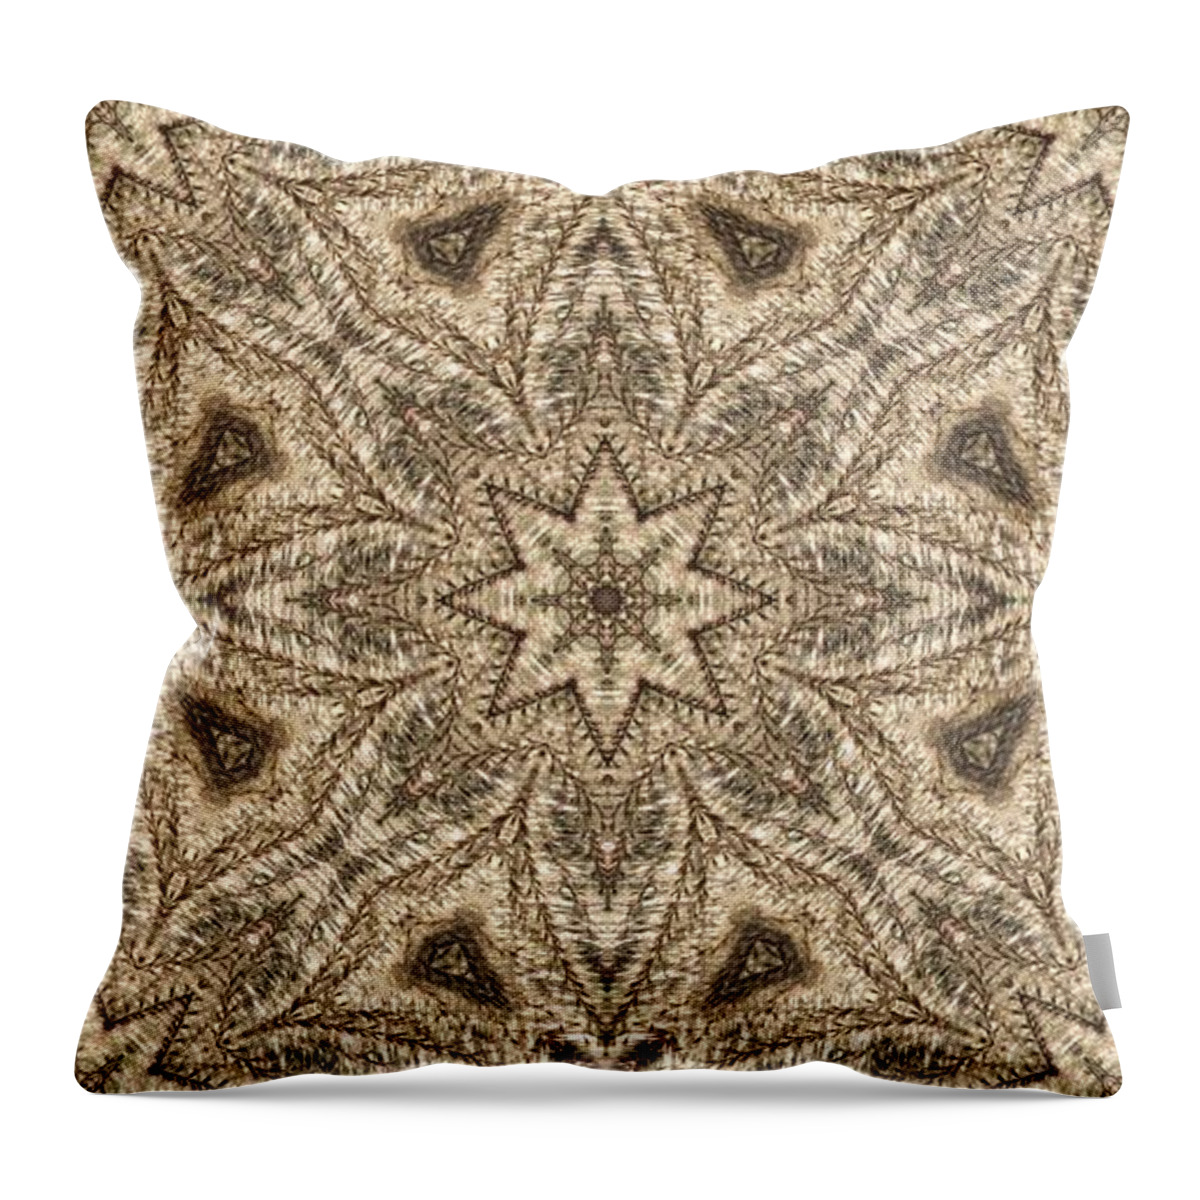 Kaleidoscope Throw Pillow featuring the photograph Grass Seed Star Mosaic by M E Cieplinski